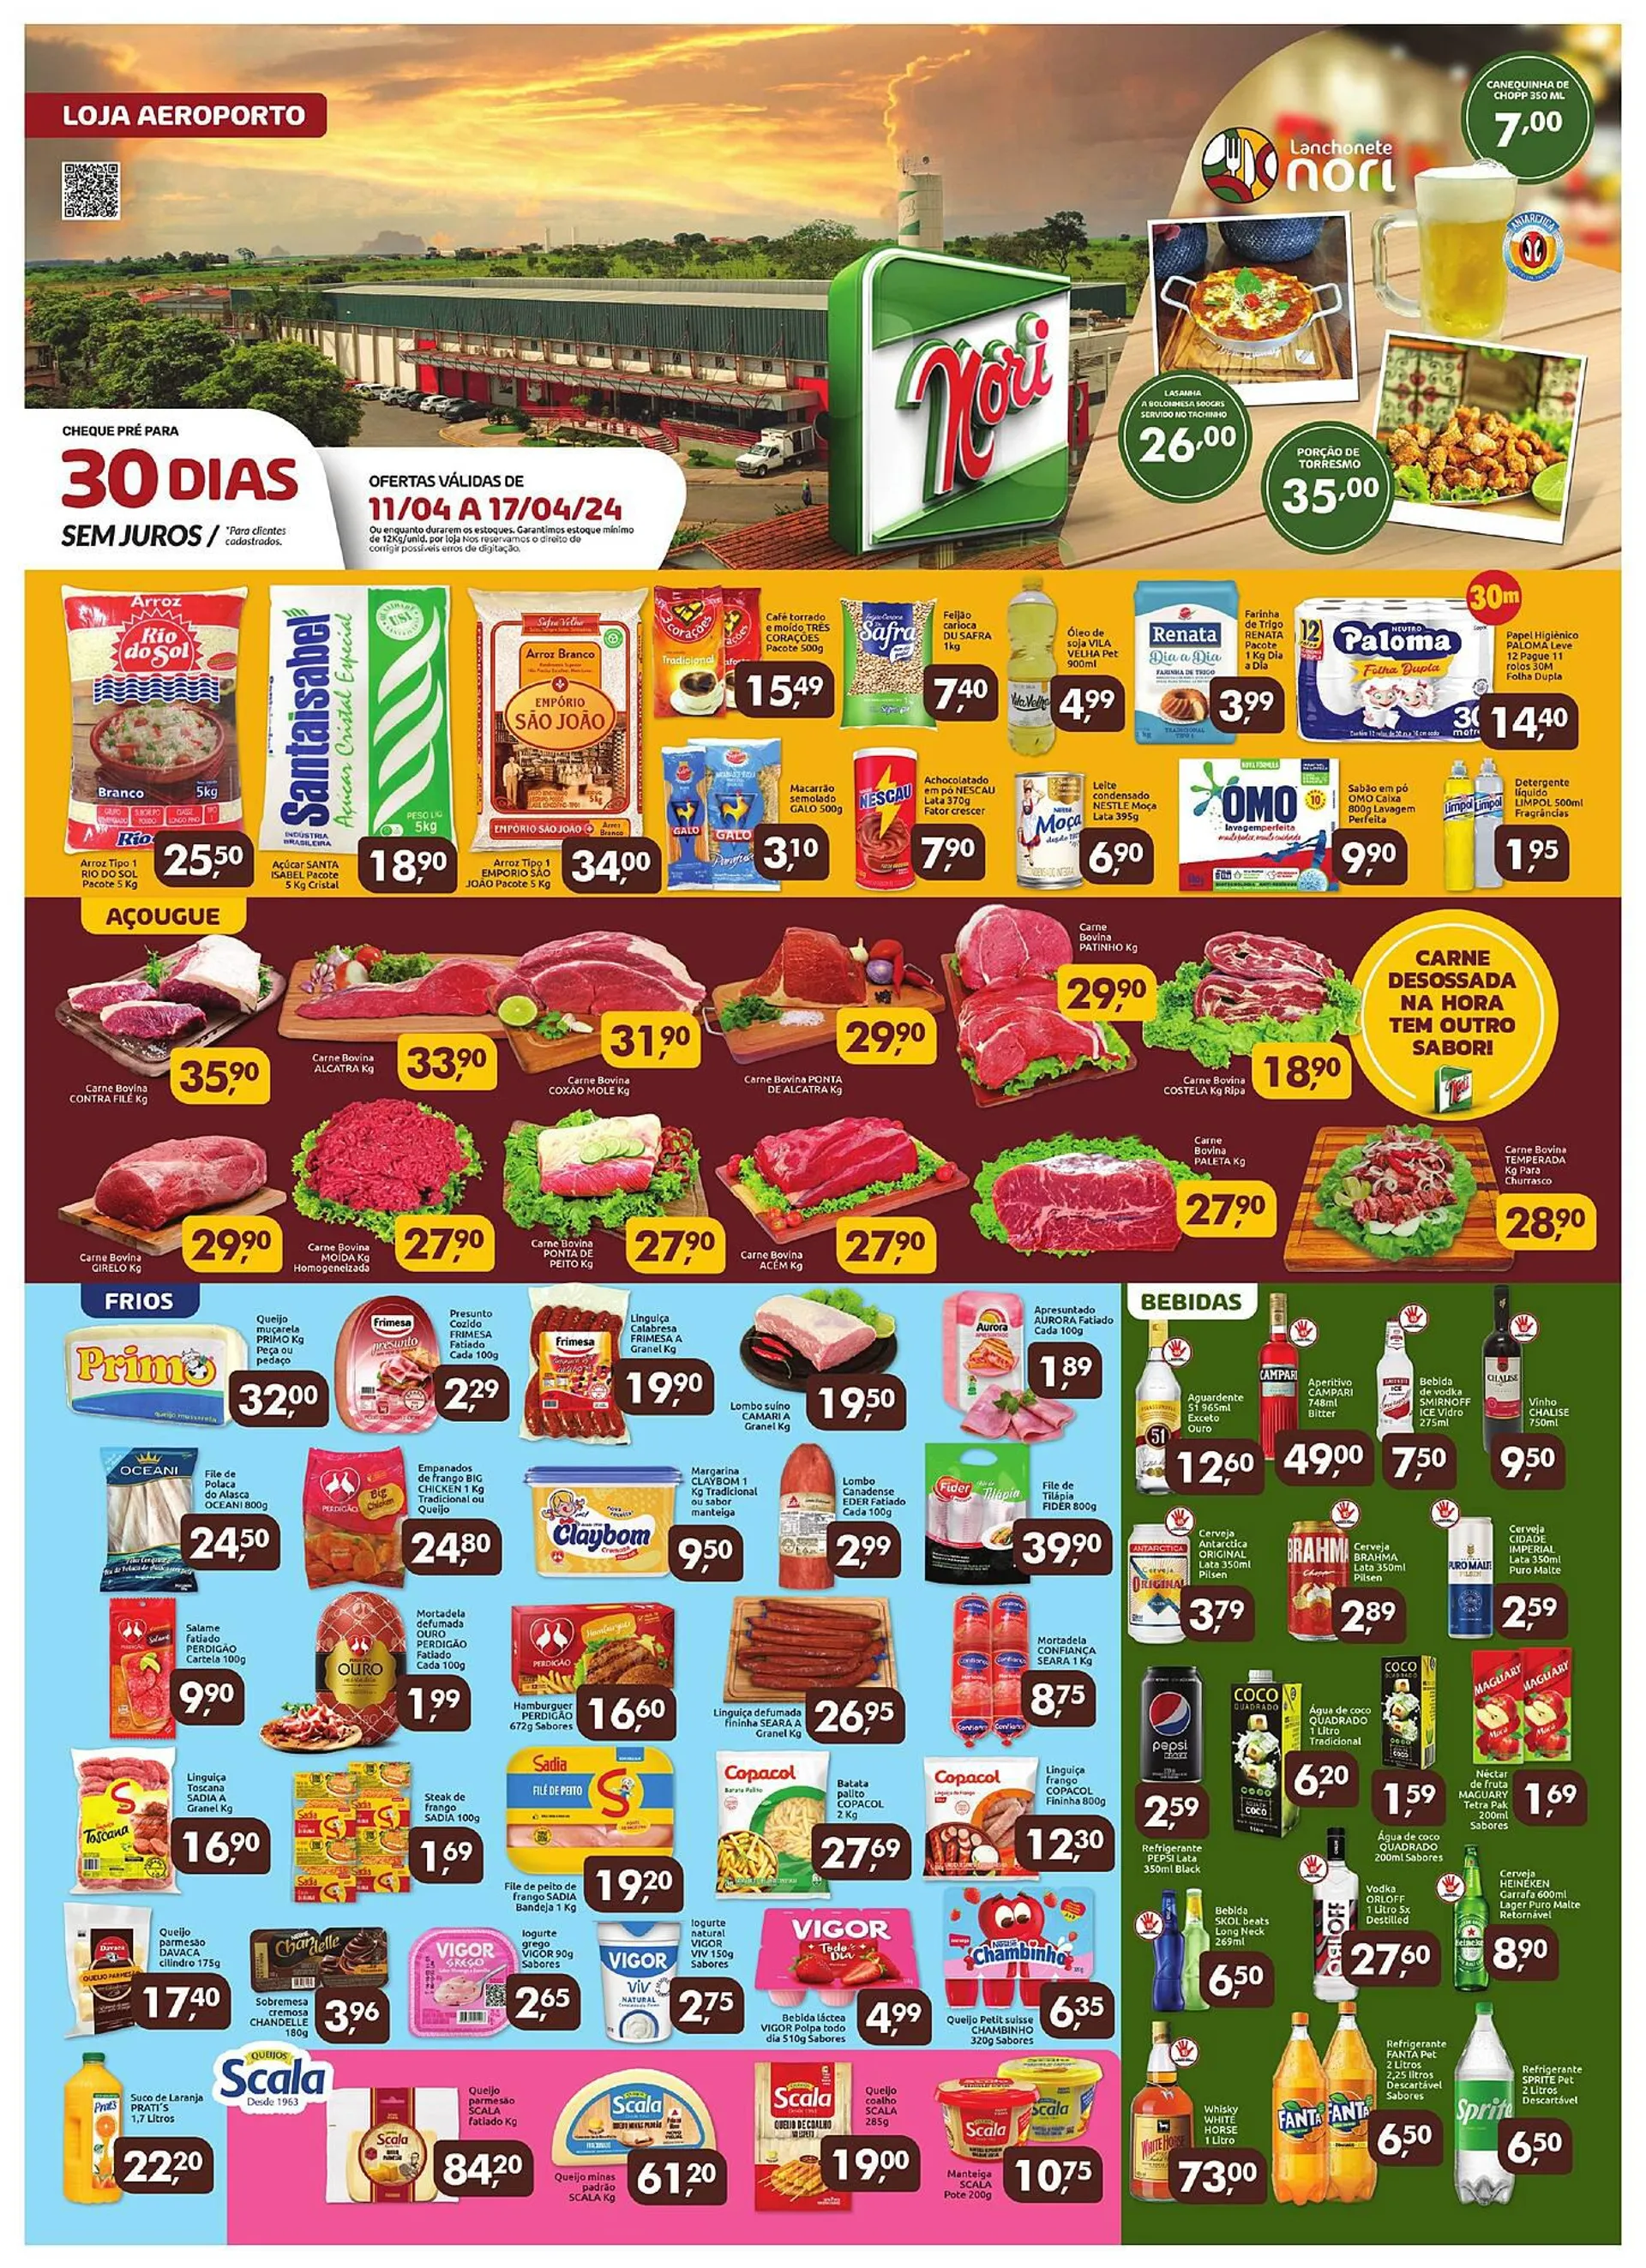 Encarte de Catálogo Supermercados Nori 11 de abril até 17 de abril 2024 - Pagina 1